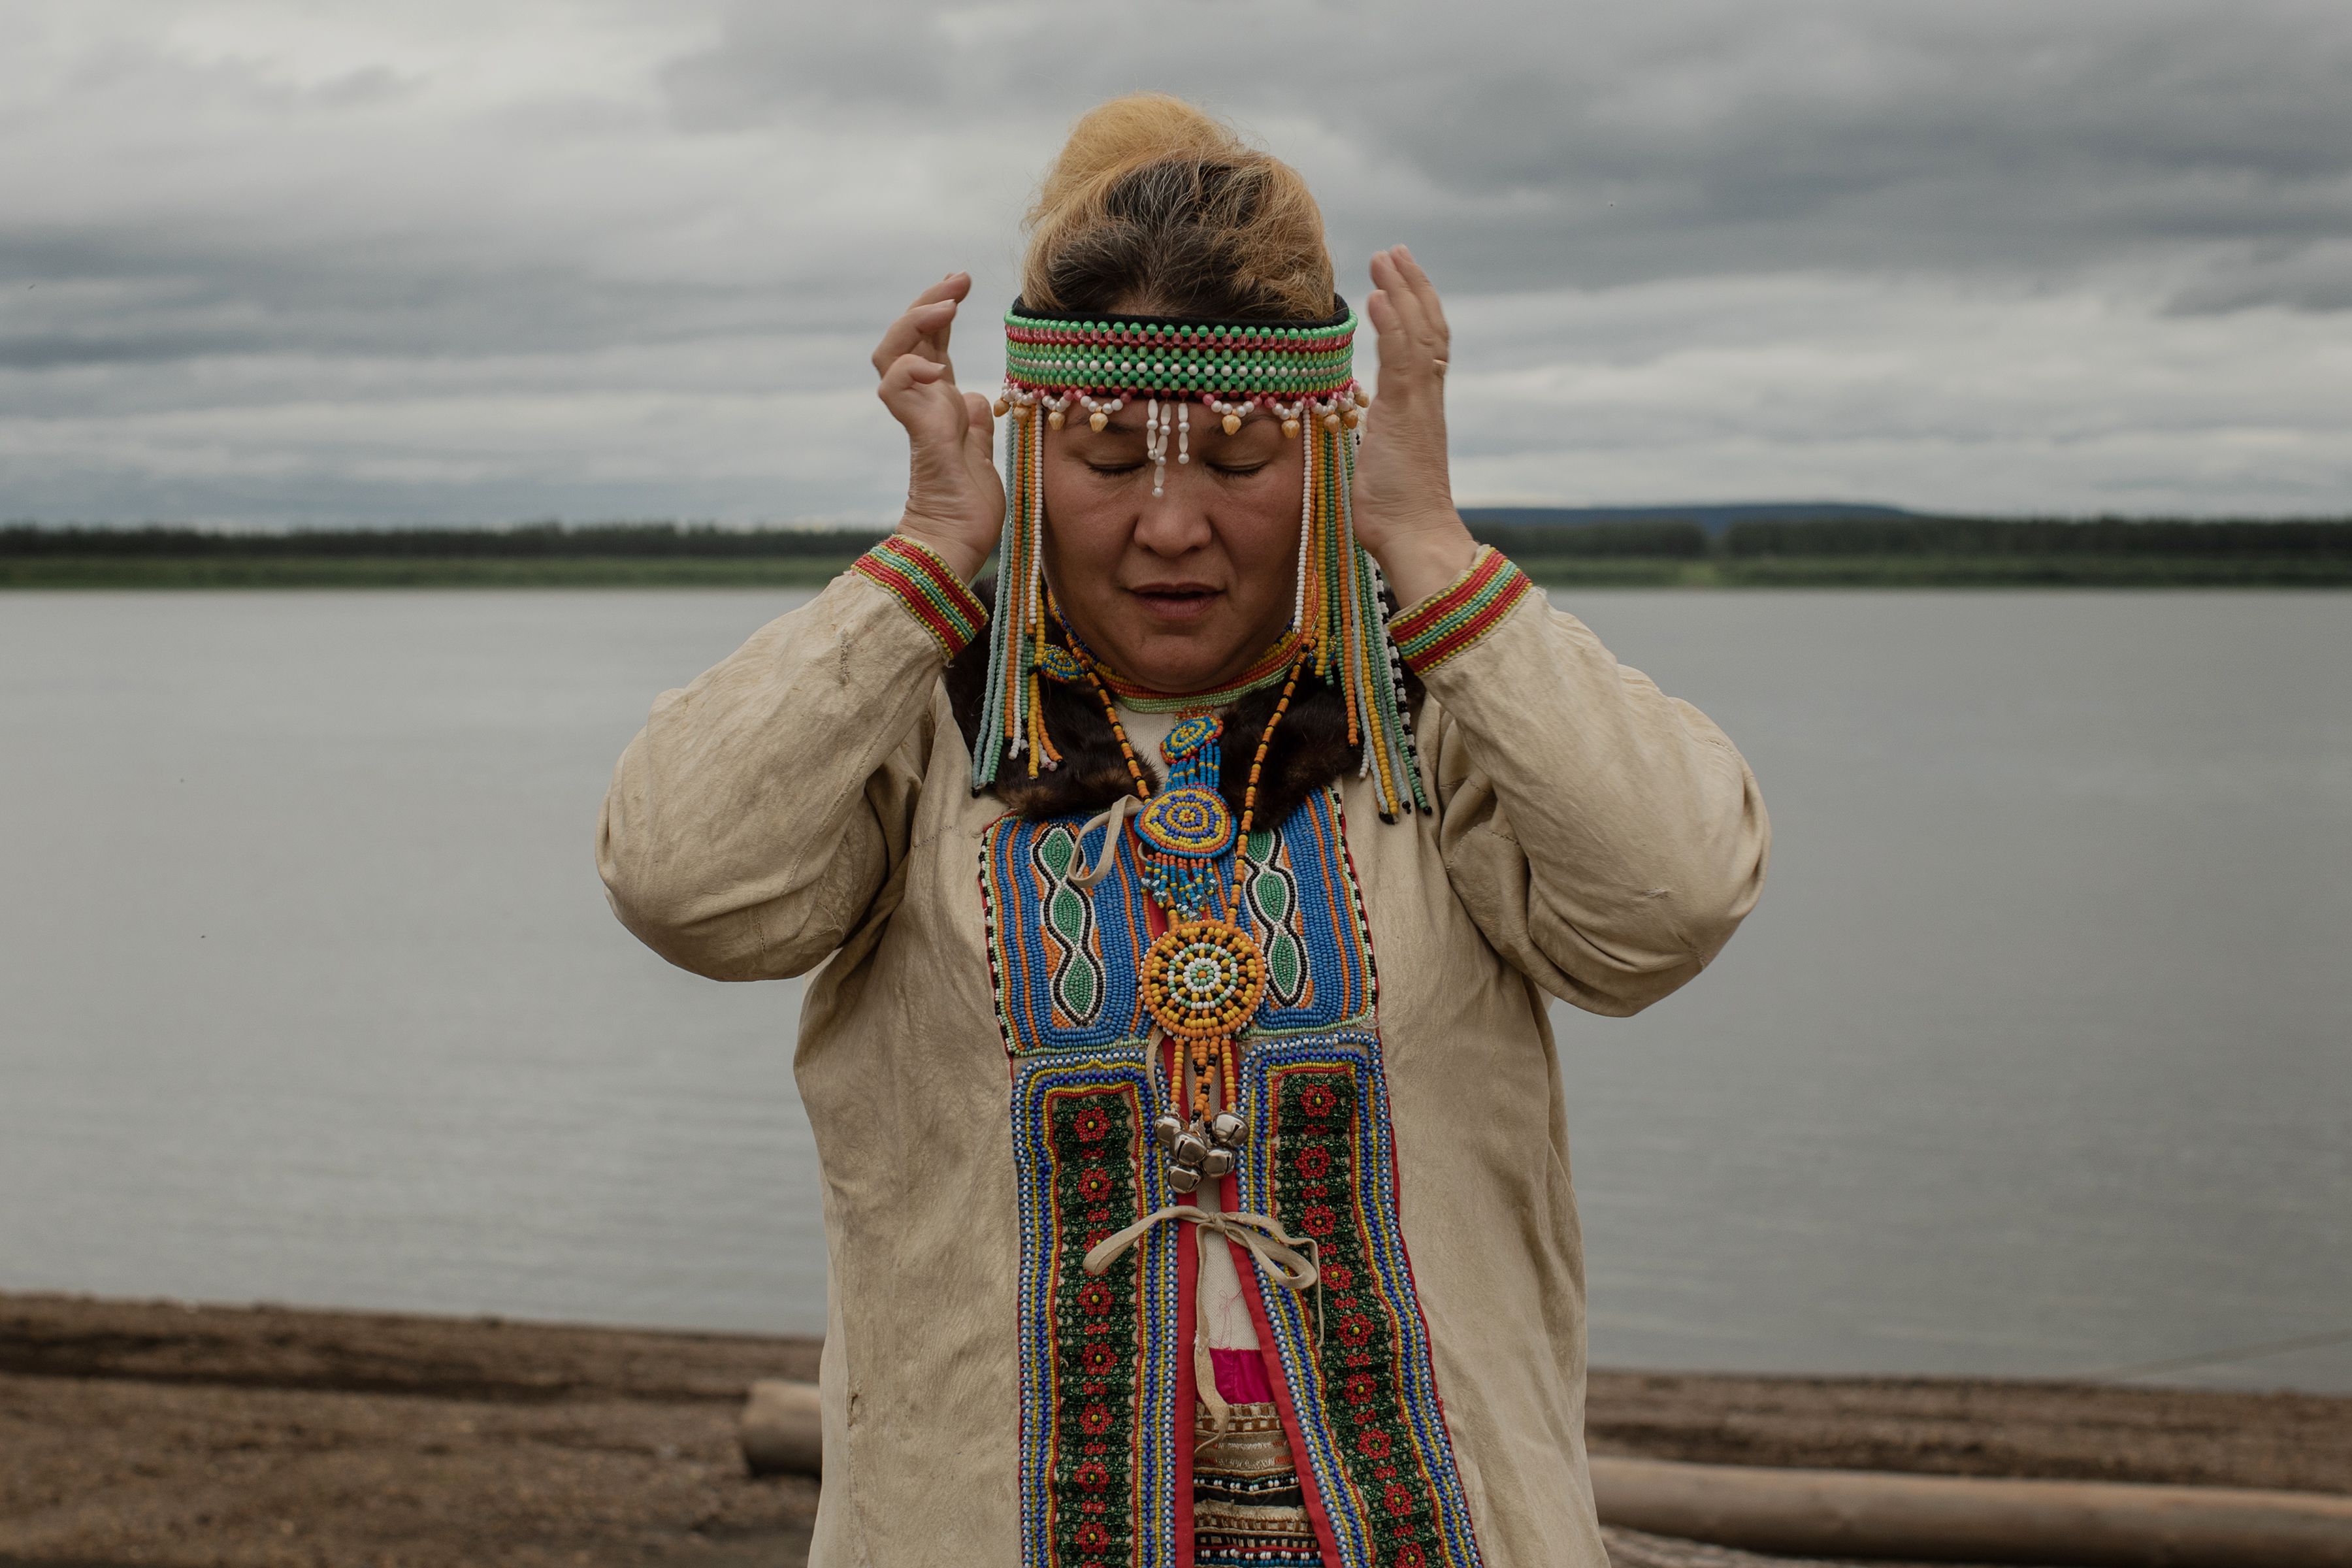 “En algún momento, hablaron de abandonar la aldea, pero la gente no quería irse”, afirmó Octyabrina R. Novoseltseva, presidenta de la Asociación de Pueblos Indígenas del Norte en la región de Srednekolimsk. (Emile Ducke/The New York Times)